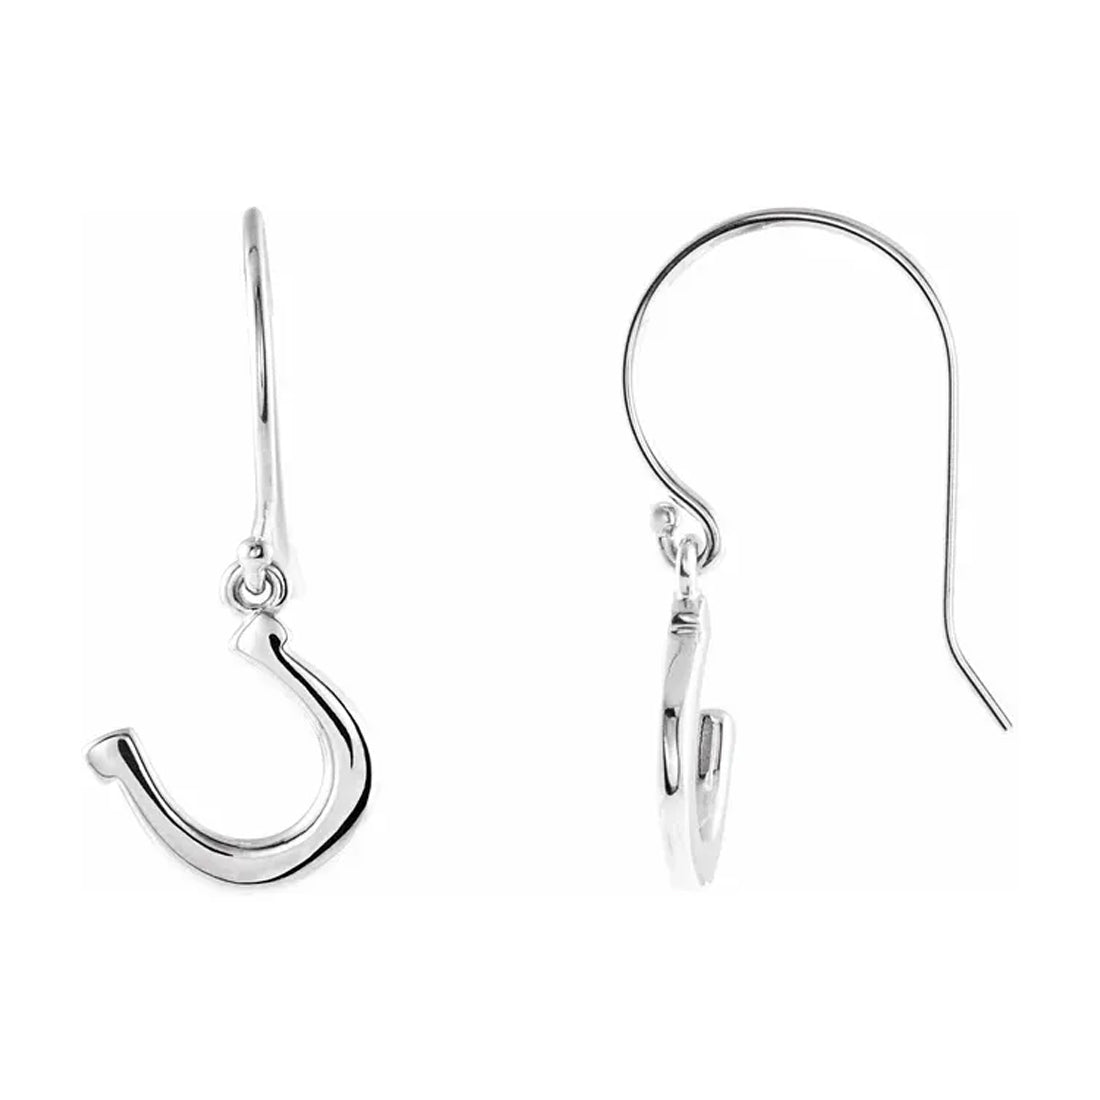 Ladies 925 Sterling Silver Petite Horseshoe Dangle Earrings - US Jewels